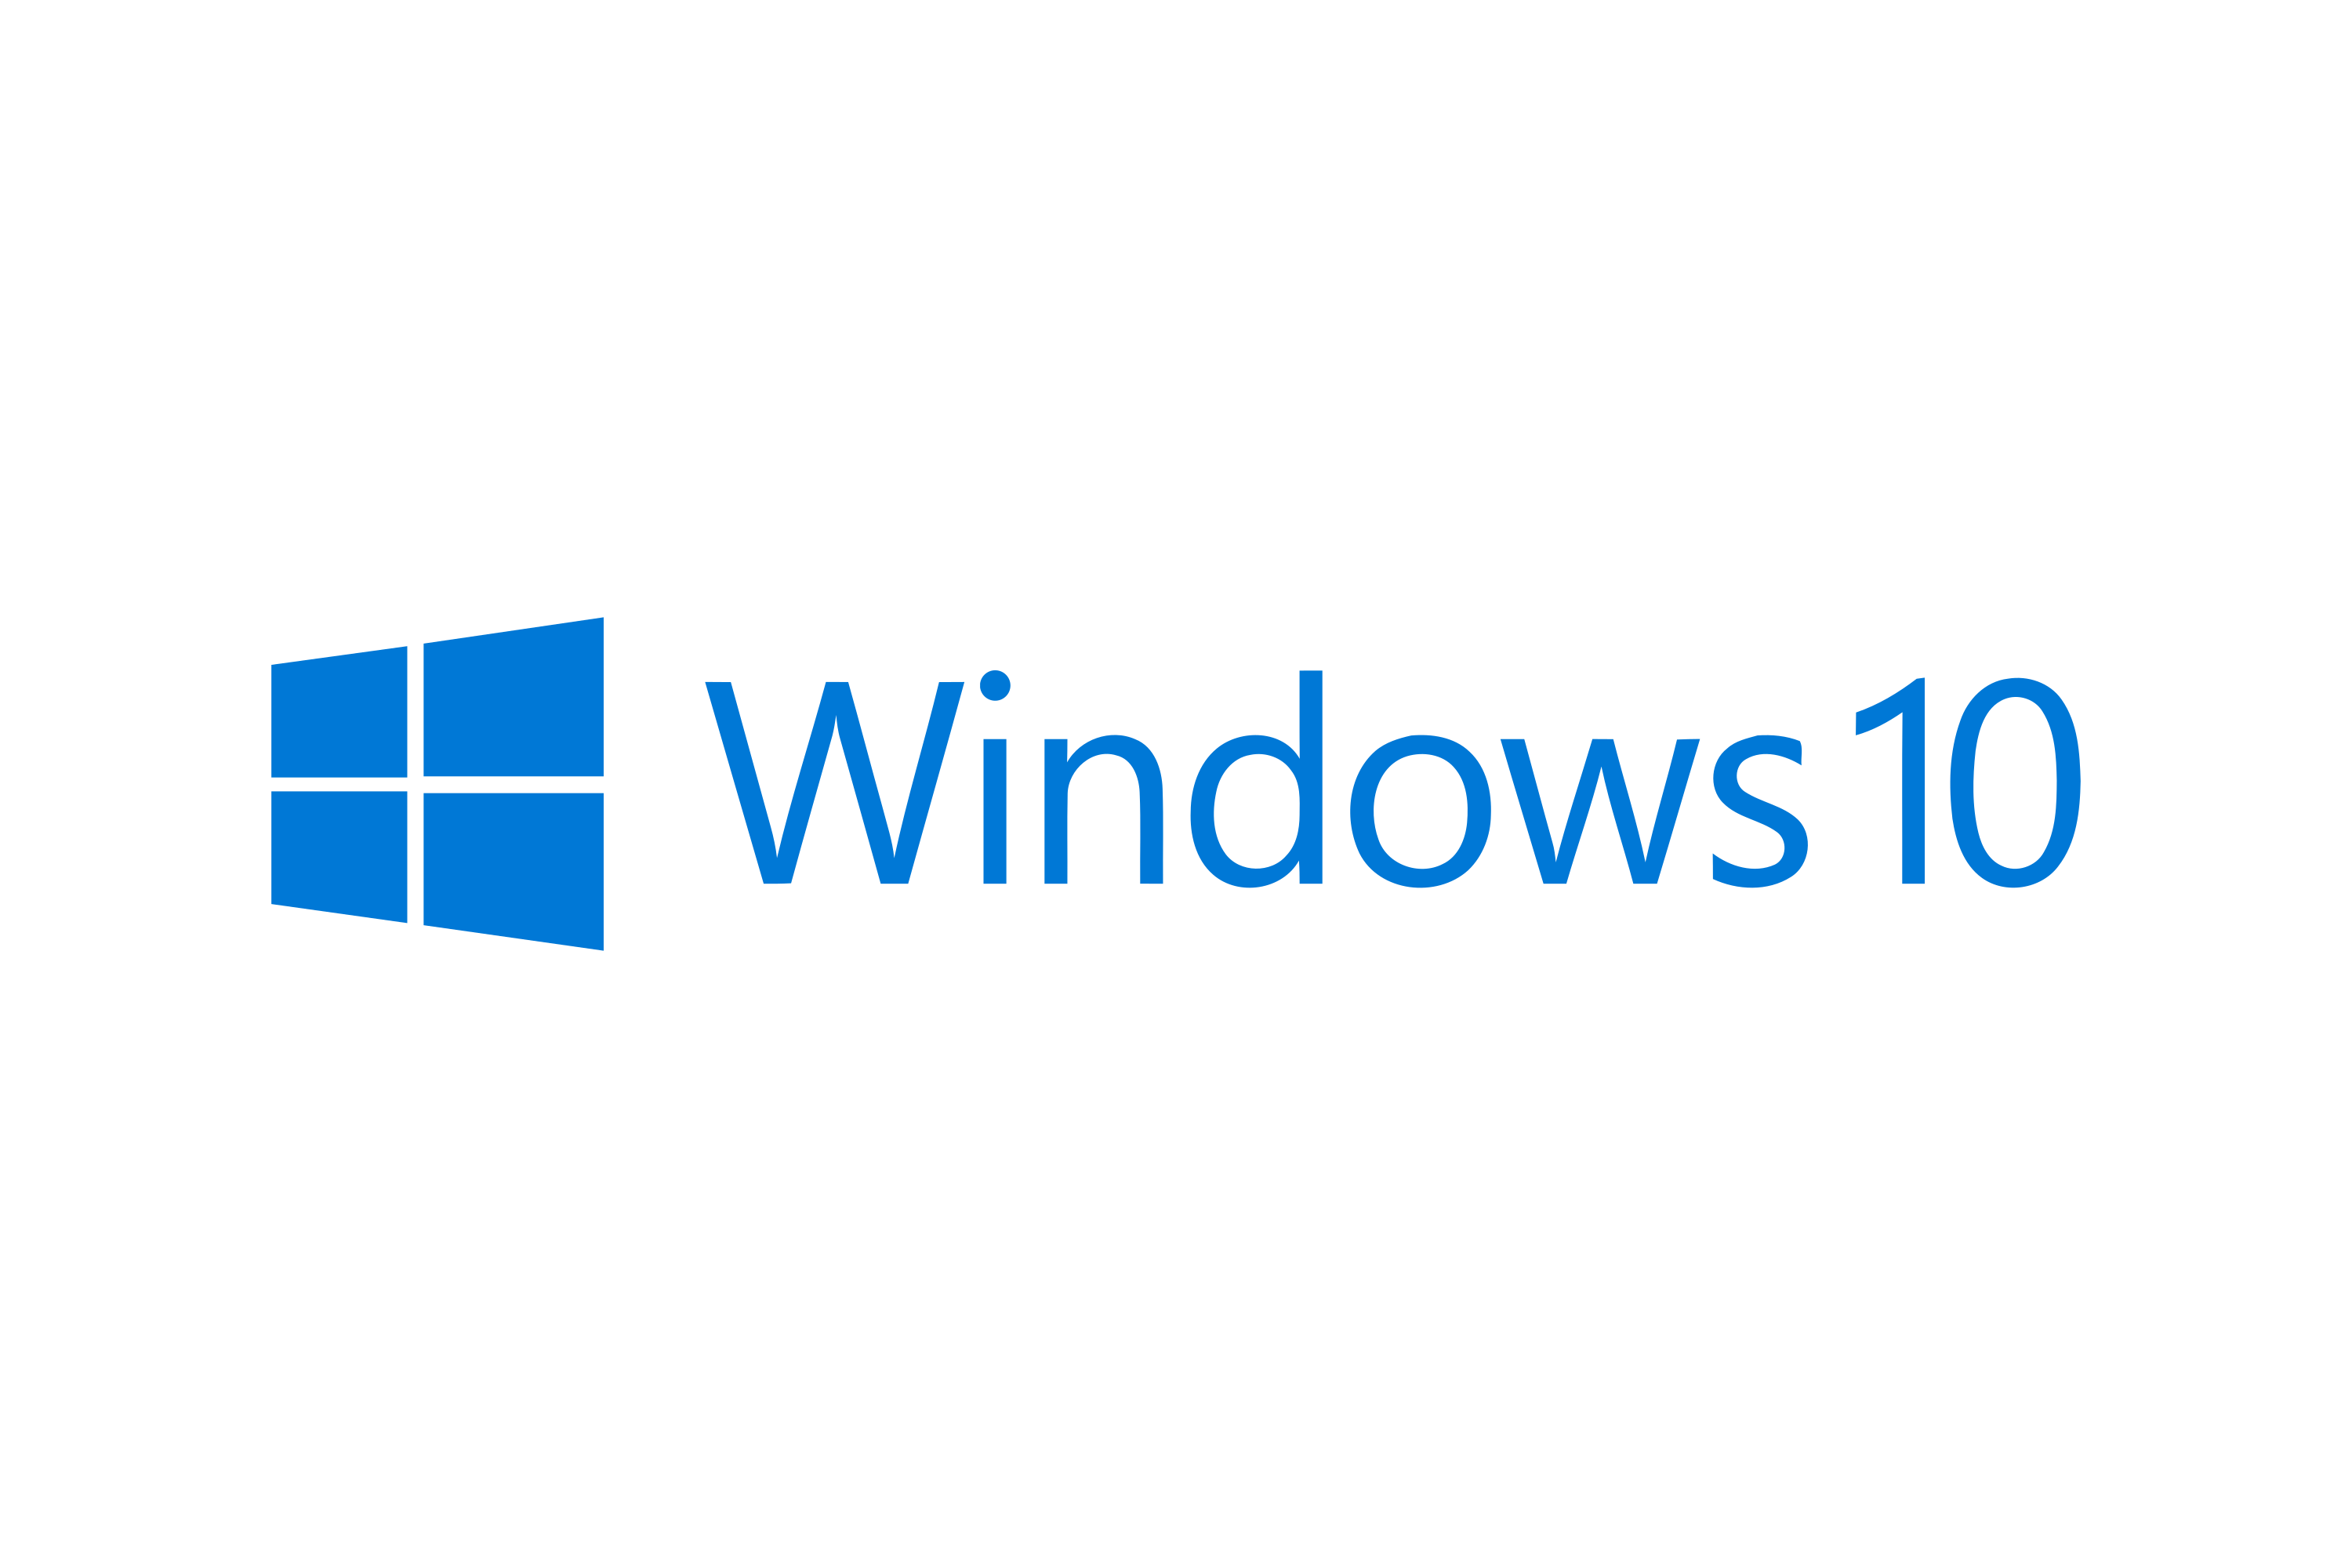 Download Windows 10 Logo In Svg Vector Or Png File Format Logo Wine